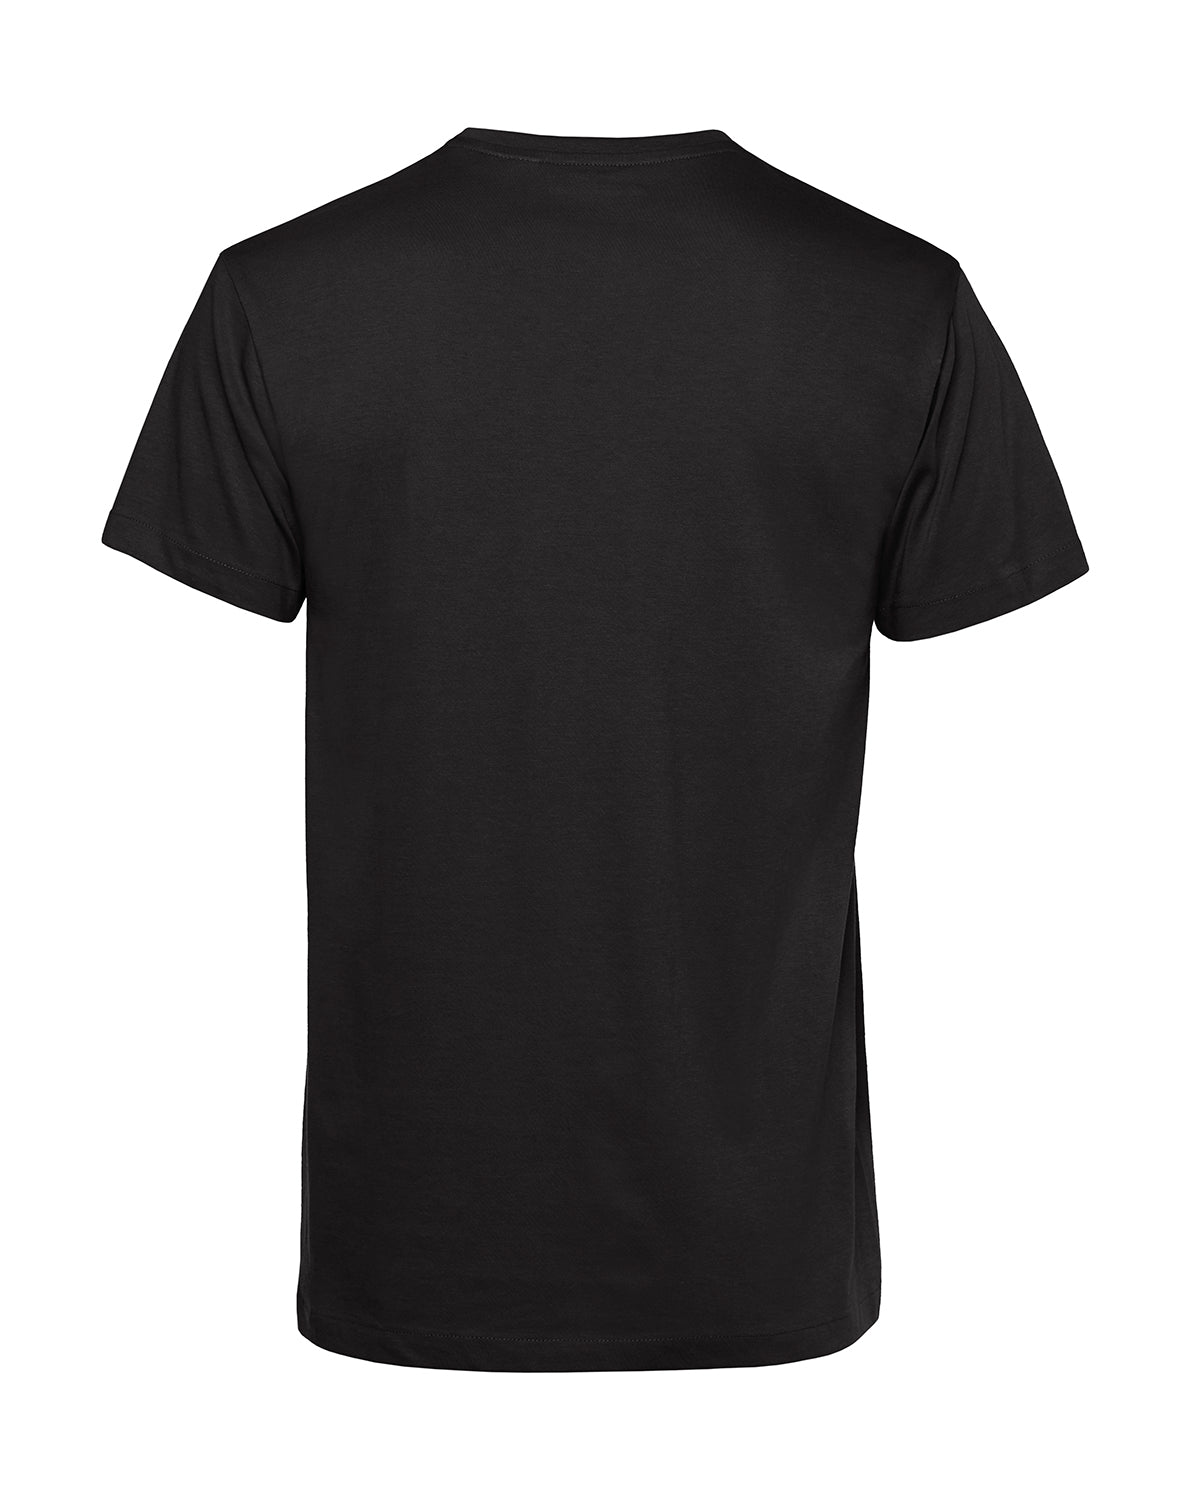 Männer T-Shirt | PÄLZRWald Zwei | schwarz | Logo orange